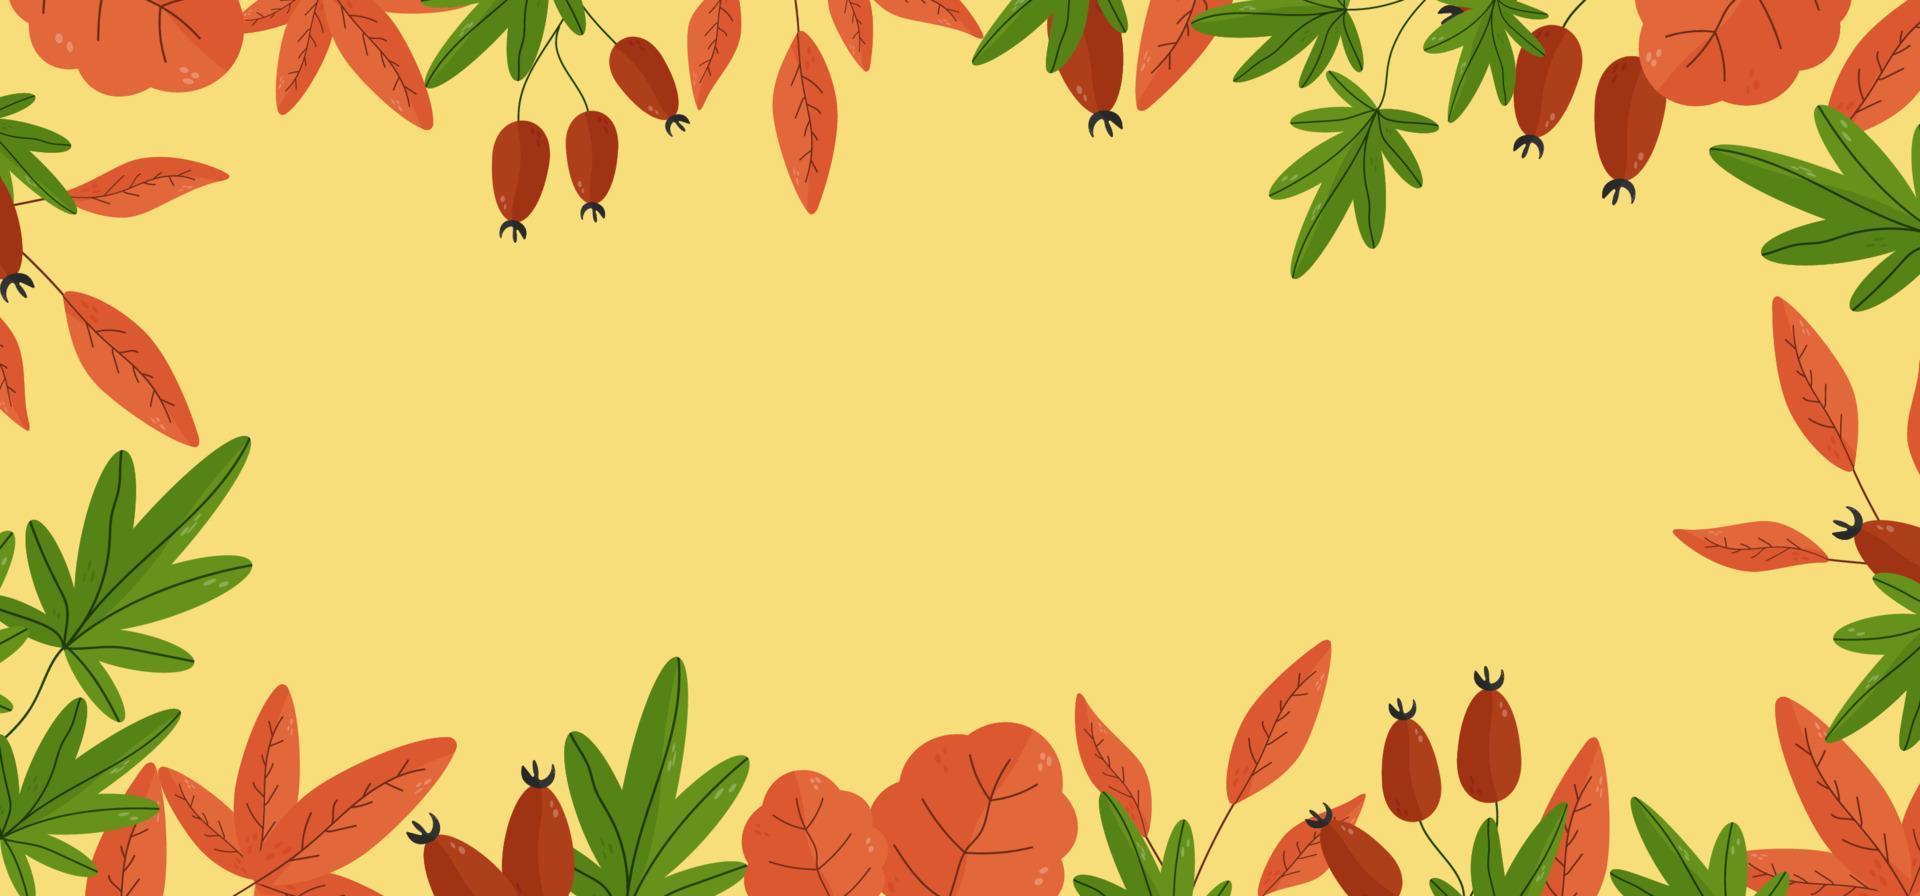 fundo de outono para texto com folhas, nozes, bolotas, bagas, elementos sazonais. modelo de moldura quadrada. ilustração vetorial com elementos botânicos vetor